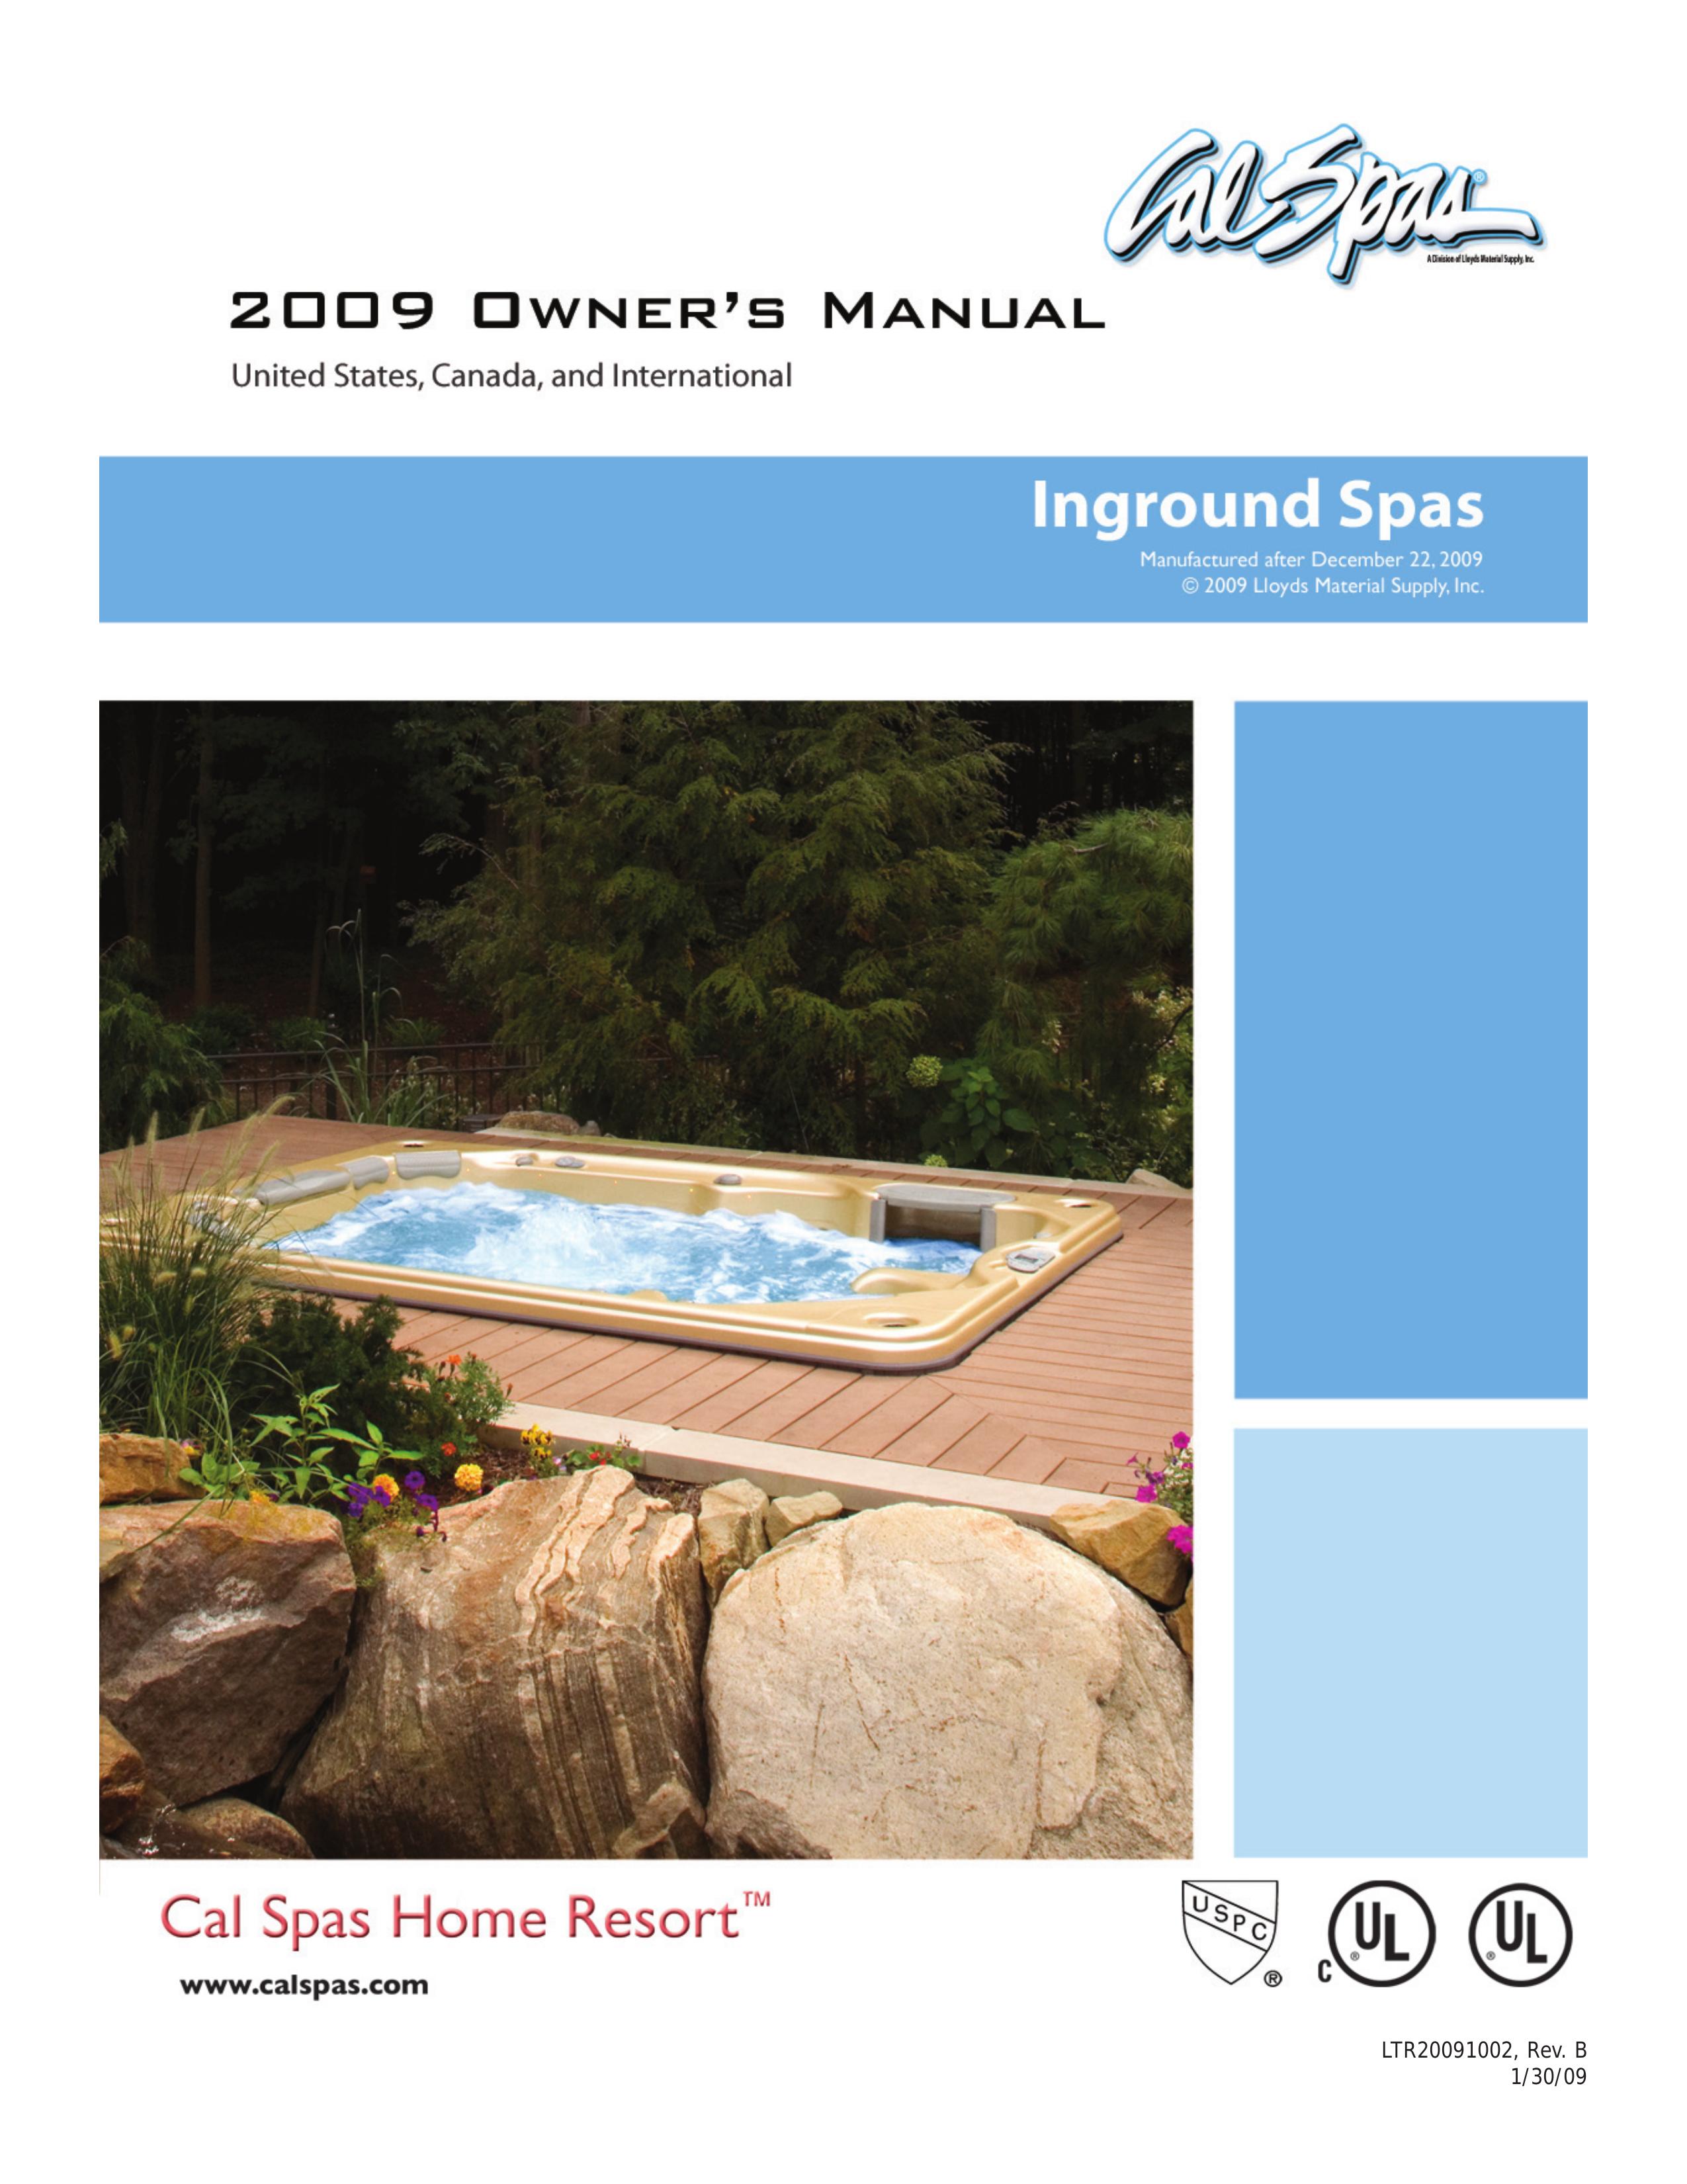 Cal Spas Inground Spas Hot Tub User Manual